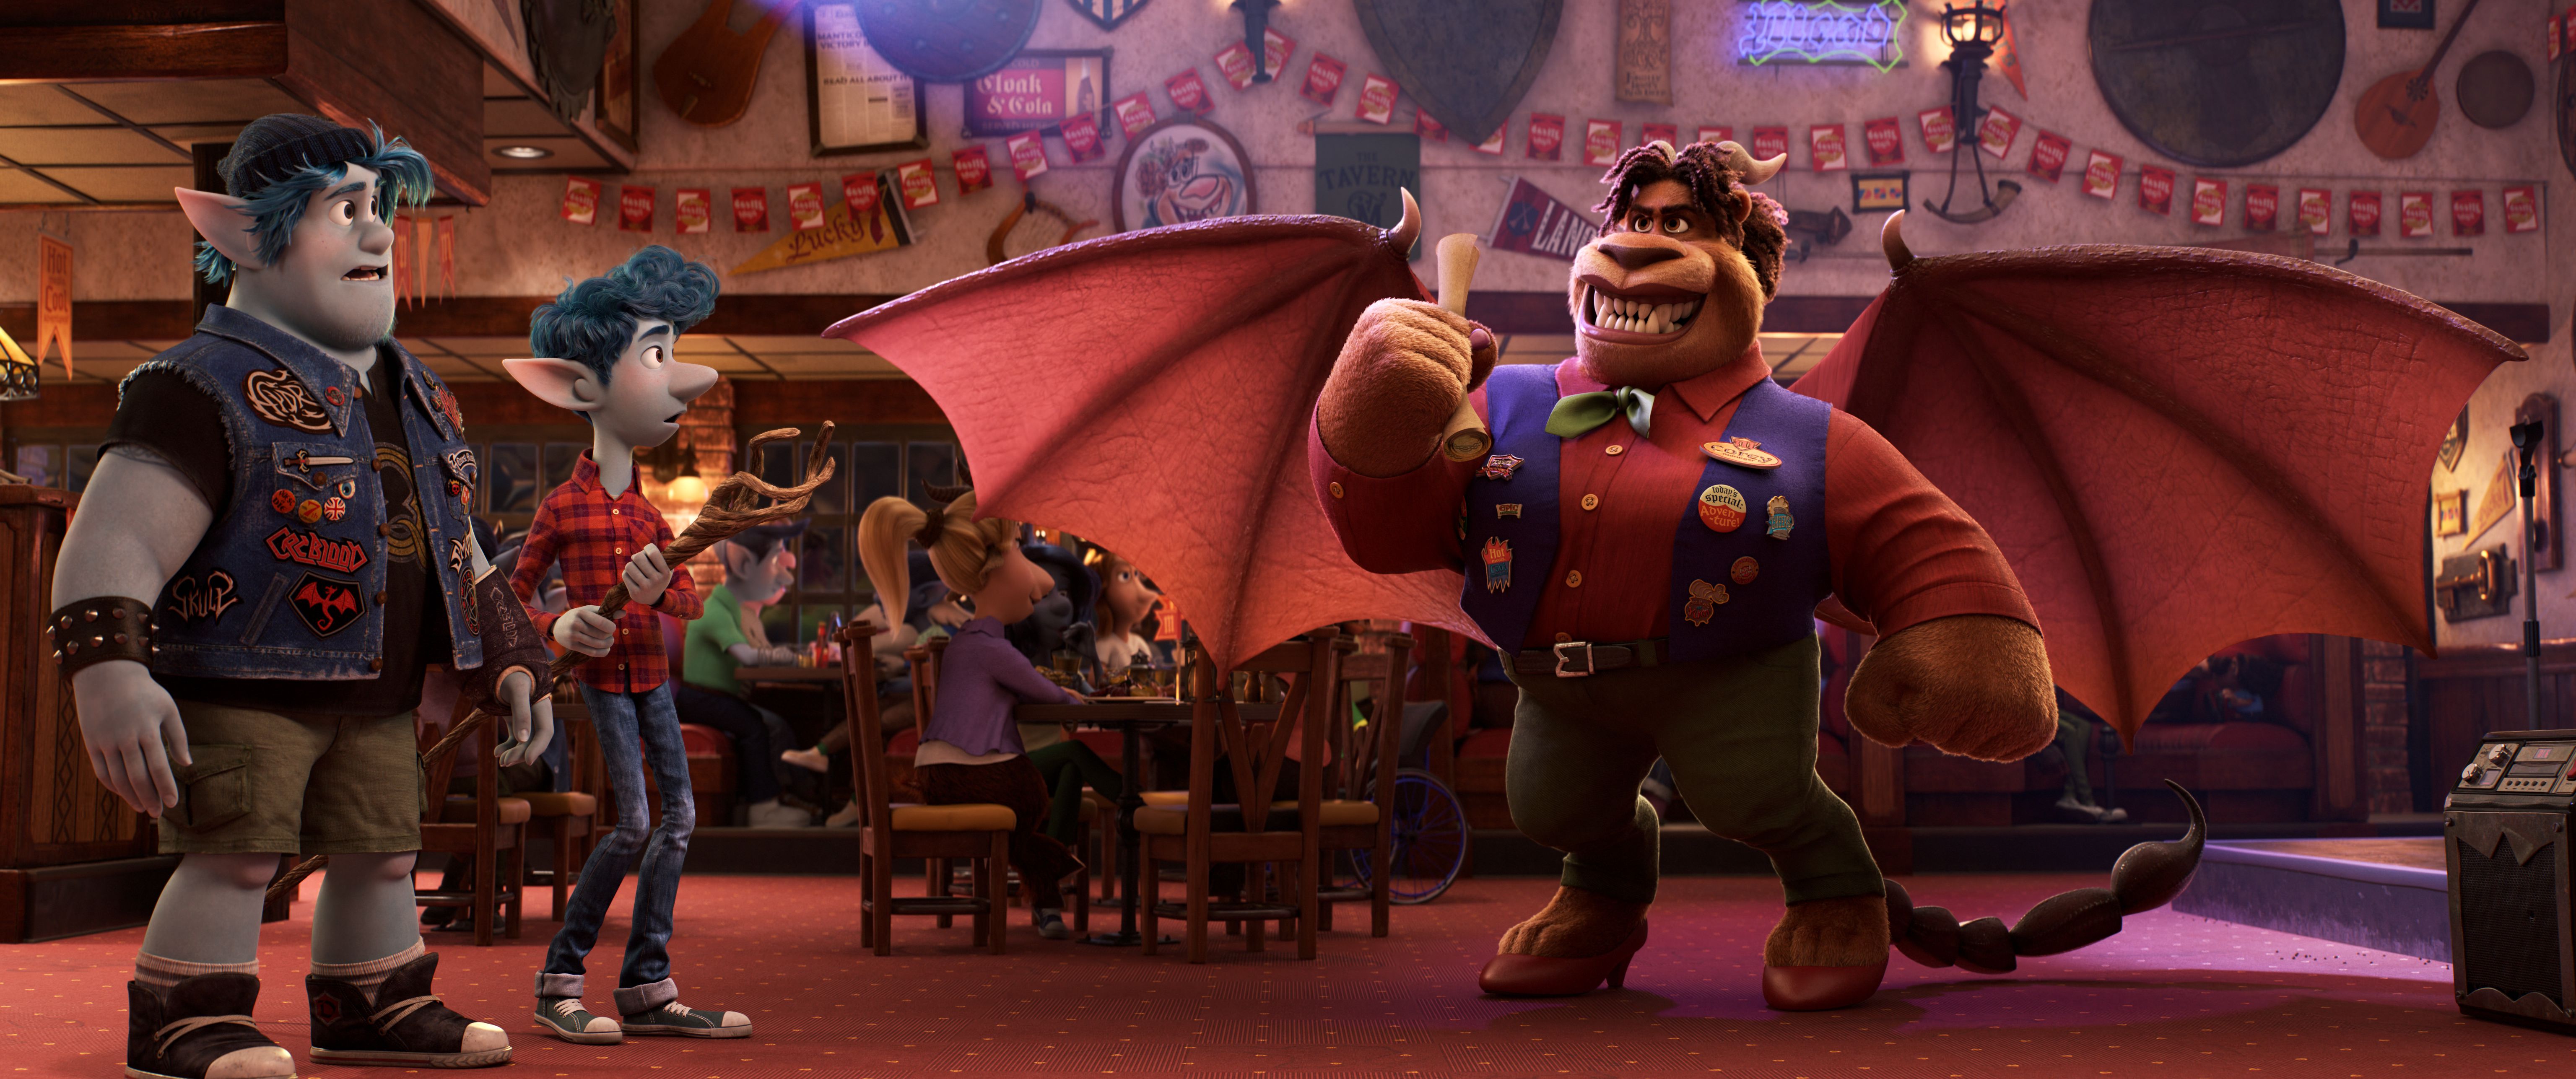 U kina stiže "Naprijed", nova animacije Disney-Pixar radionice 